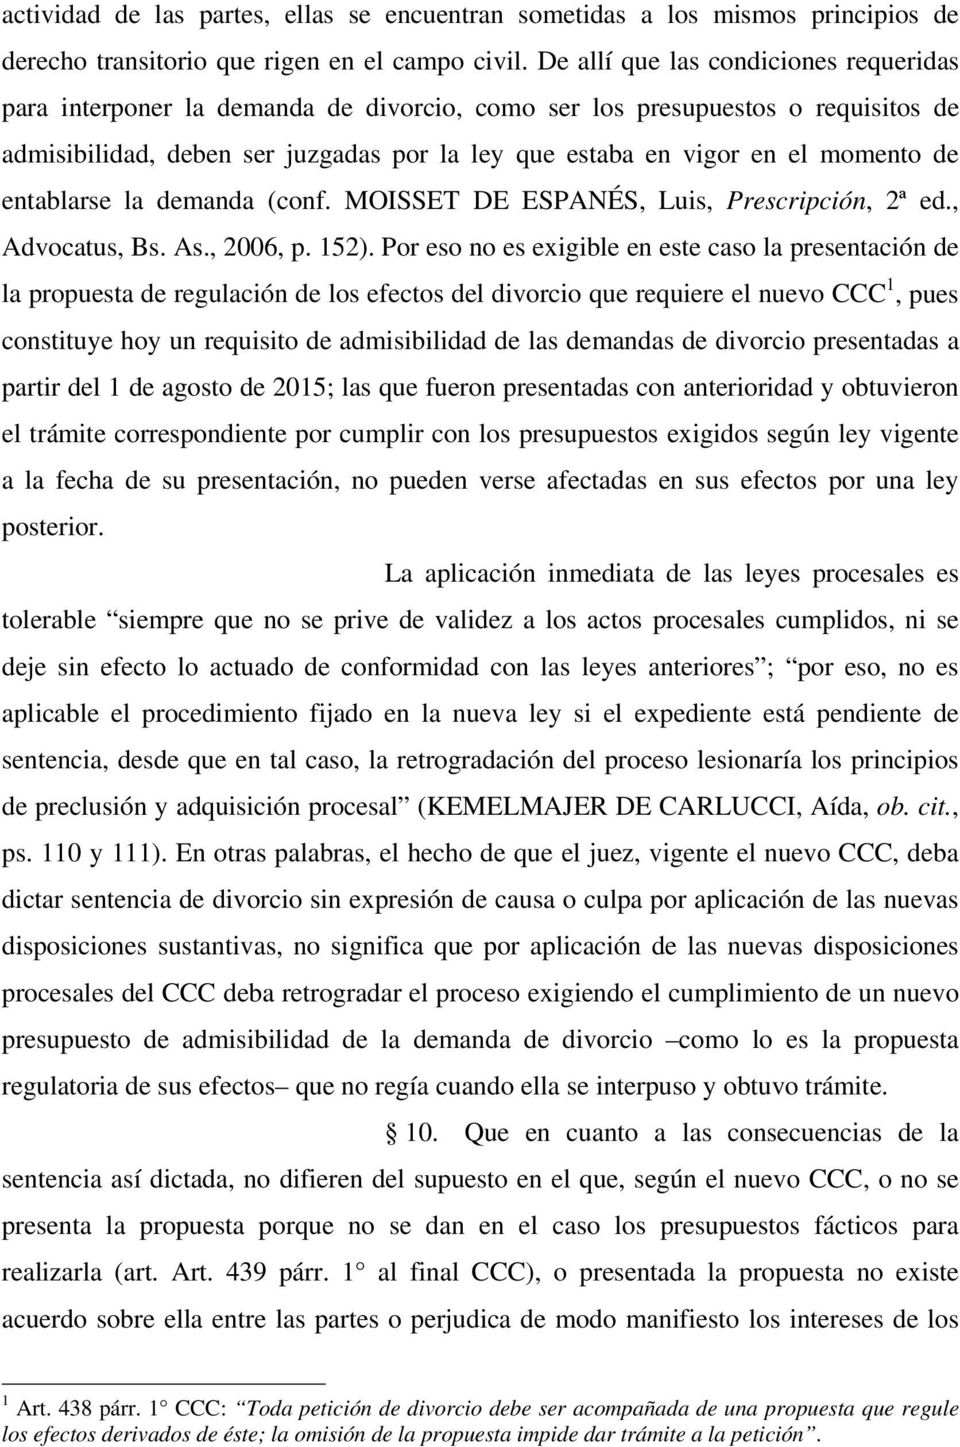 de entablarse la demanda (conf. MOISSET DE ESPANÉS, Luis, Prescripción, 2ª ed., Advocatus, Bs. As., 2006, p. 152).